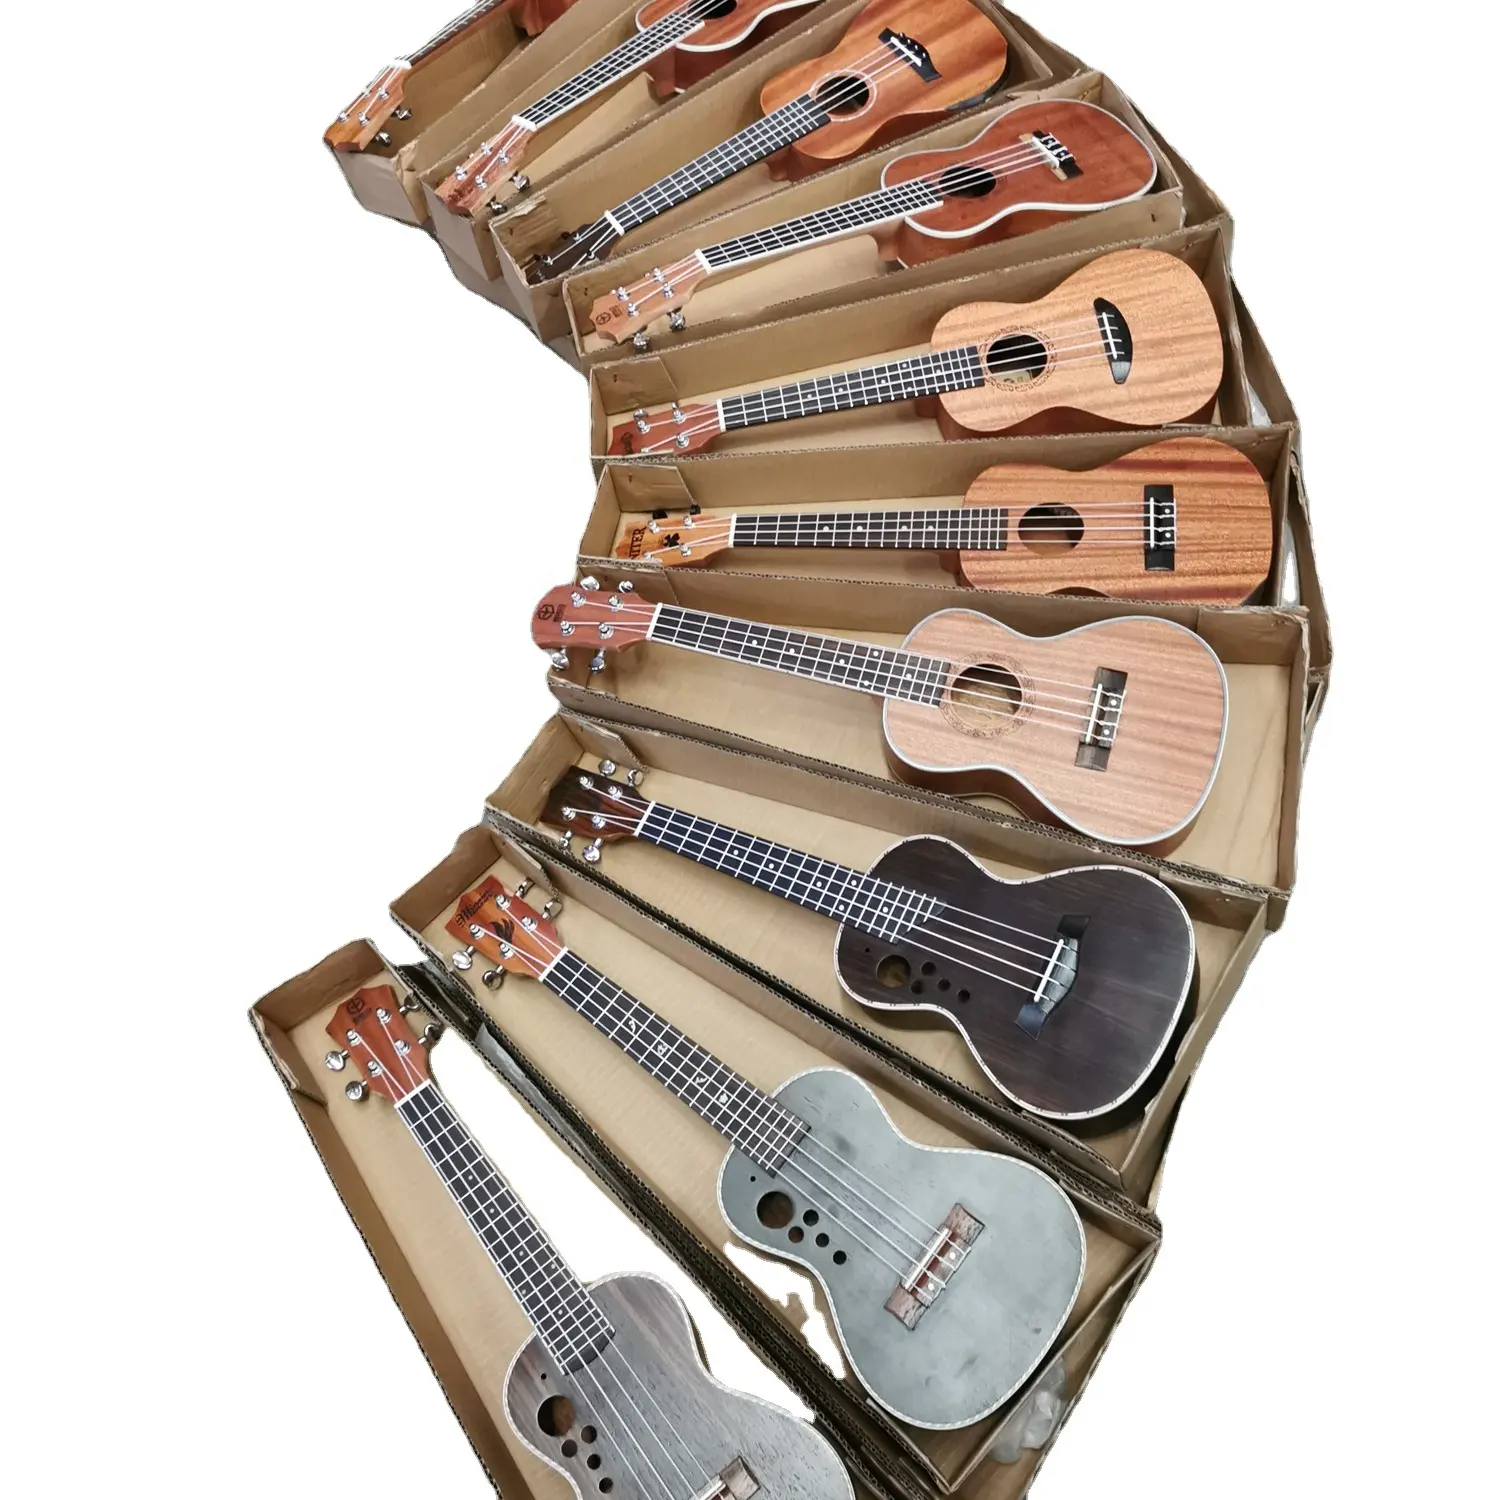 מלאי זול 21 23 26 אינץ יוקולילי סופרן קונצרט טנור ukulele עץ ילדים גיטרה